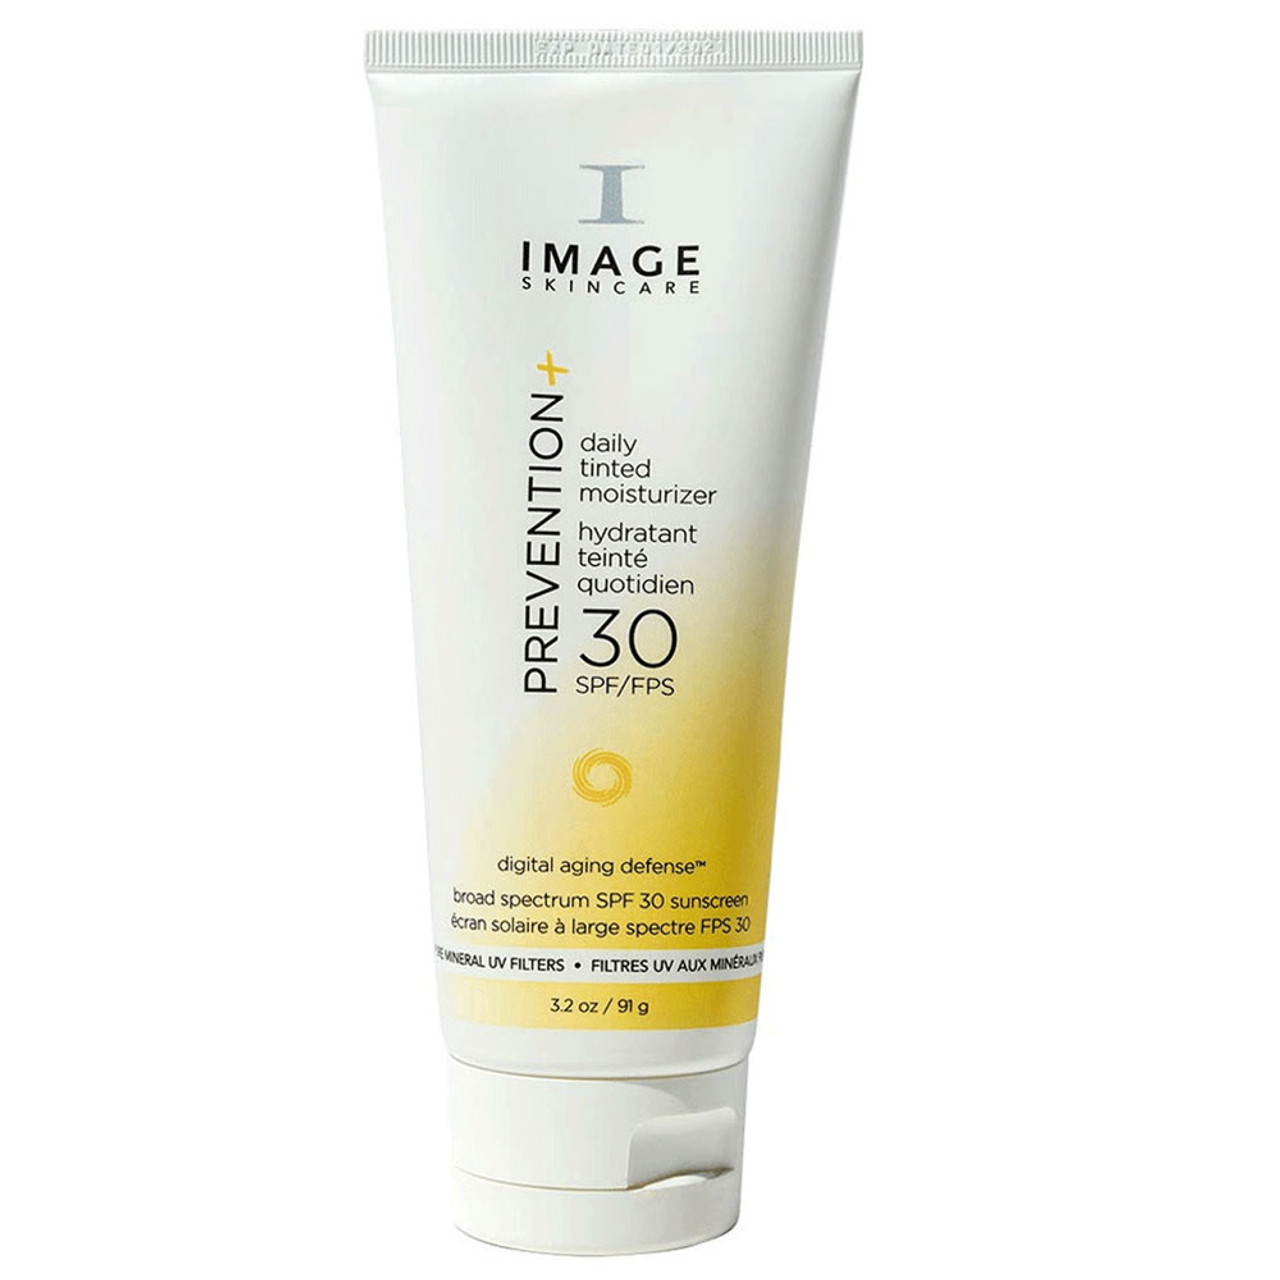 IMAGE Skincare PREVENTION+ Daily Tinted Moisturizer SPF 30 BeautifiedYou.com